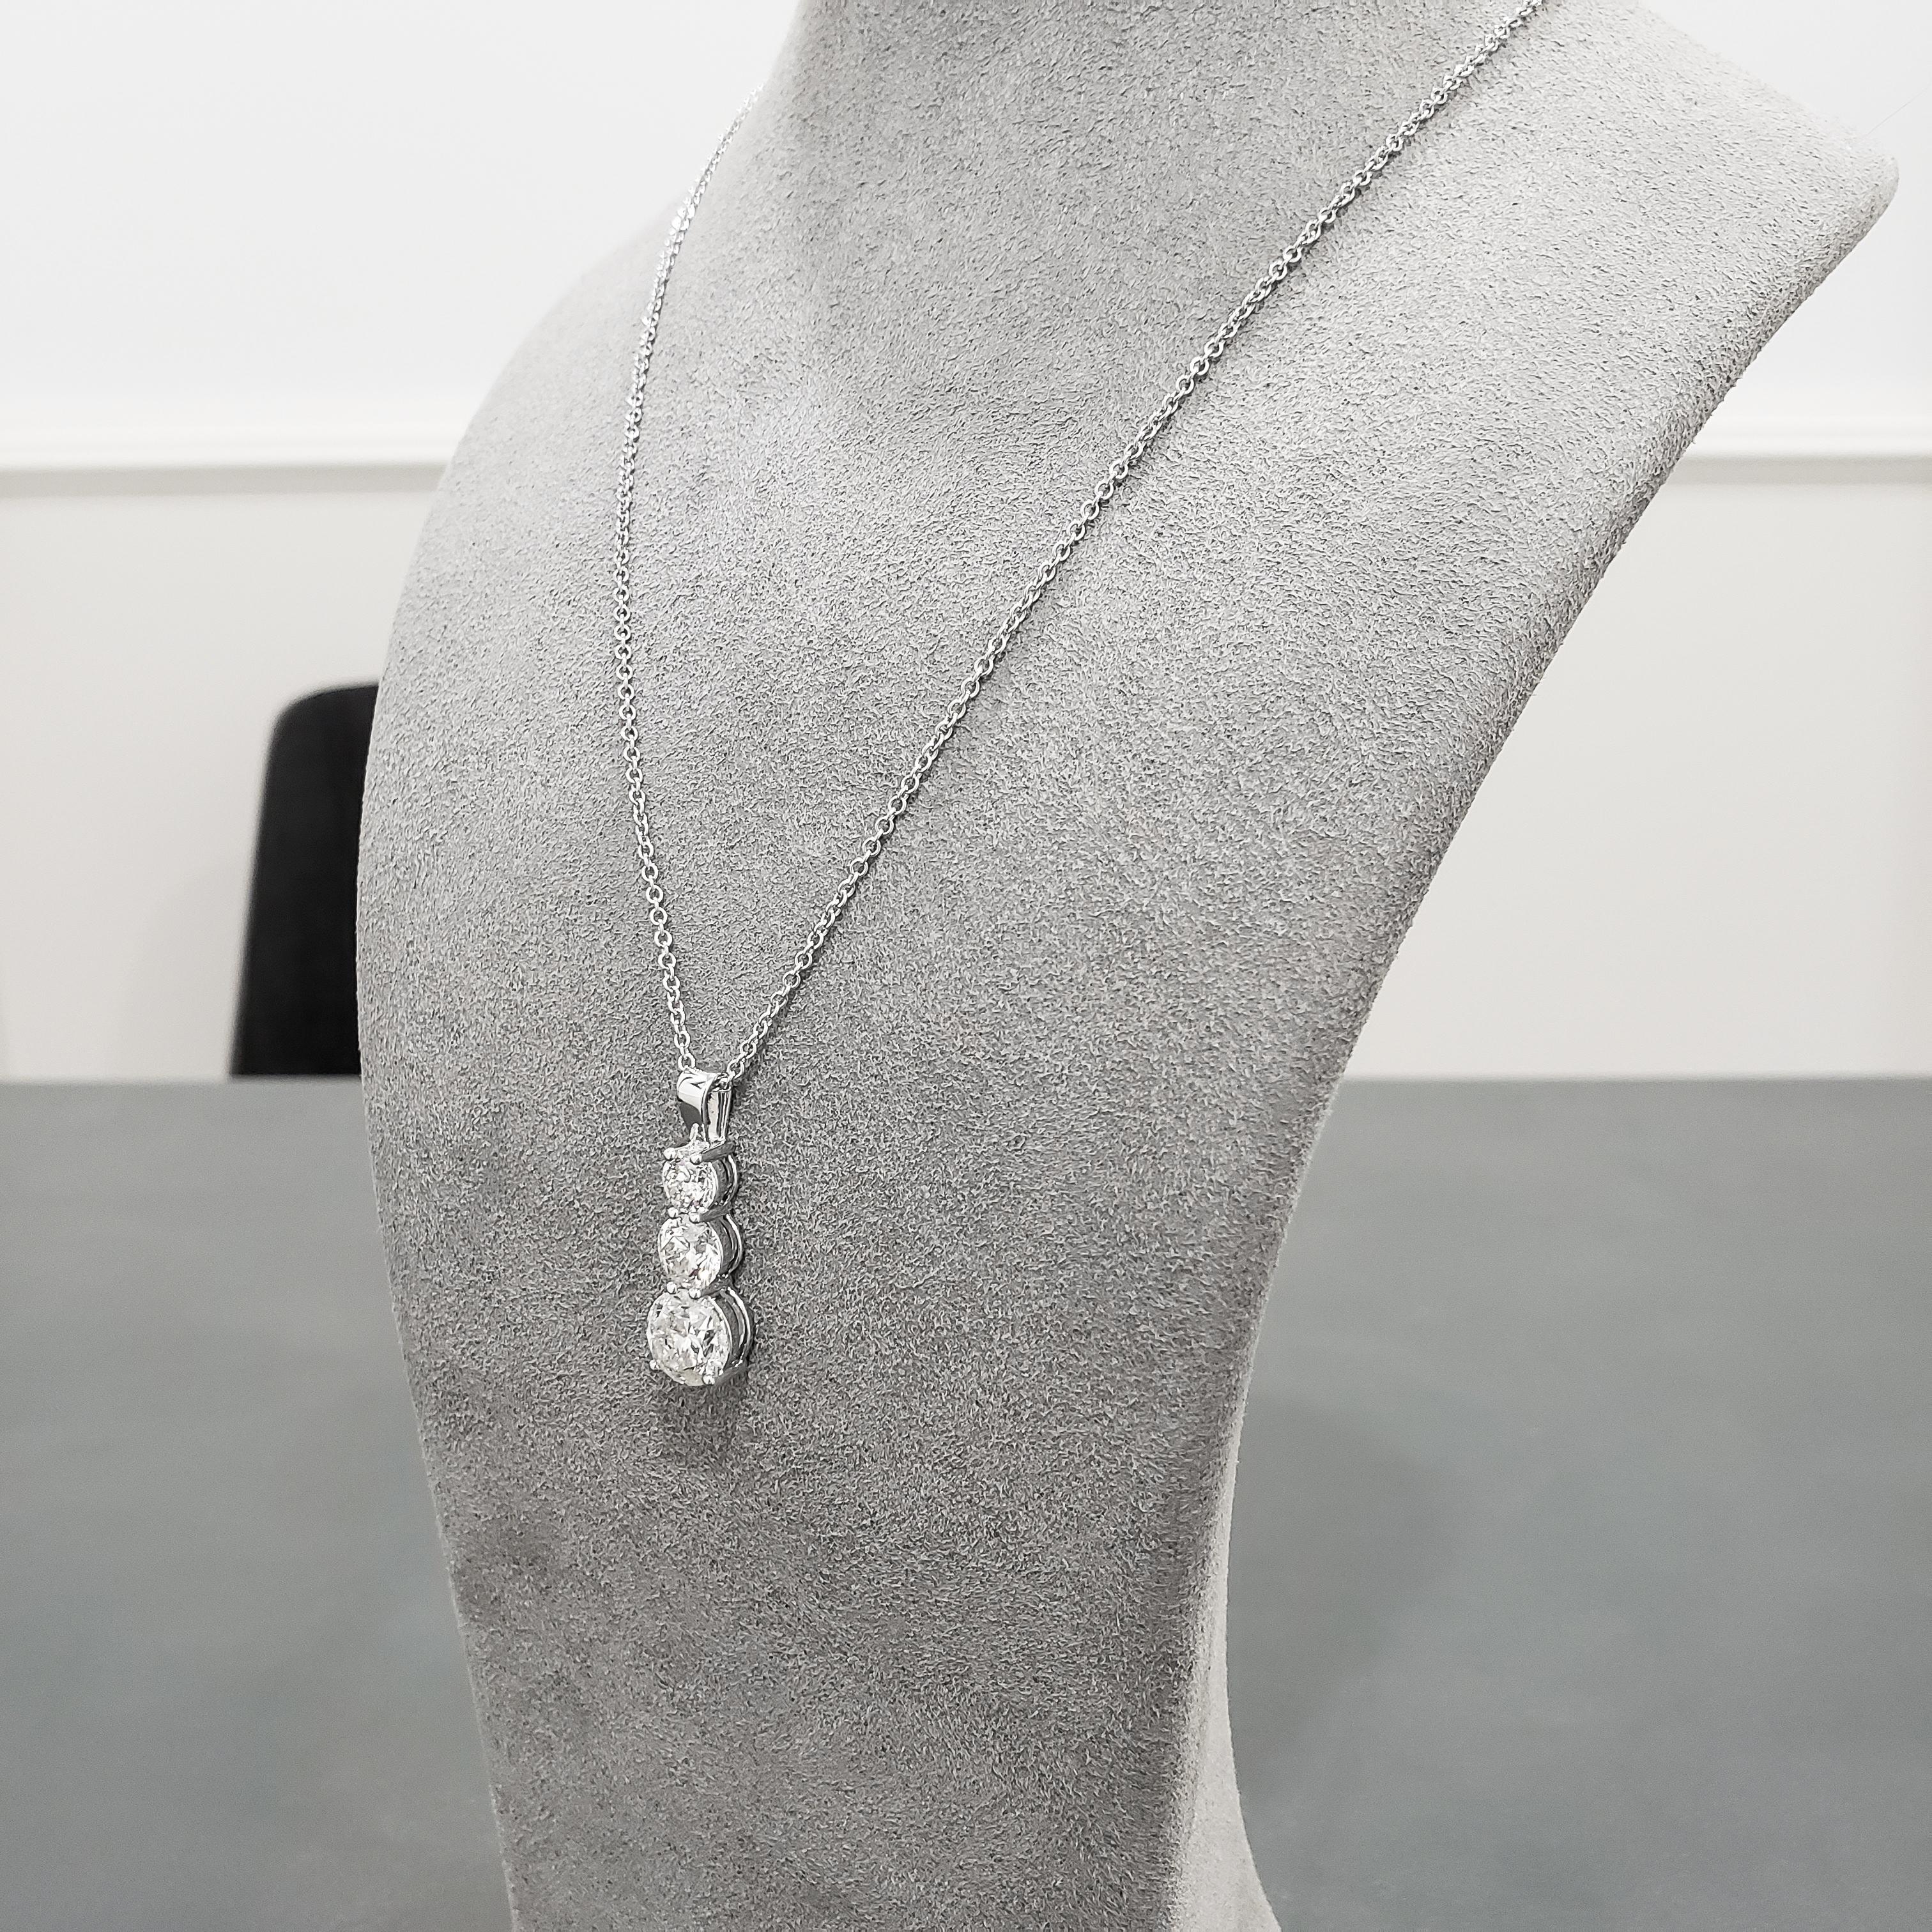 3 diamond drop pendant necklace